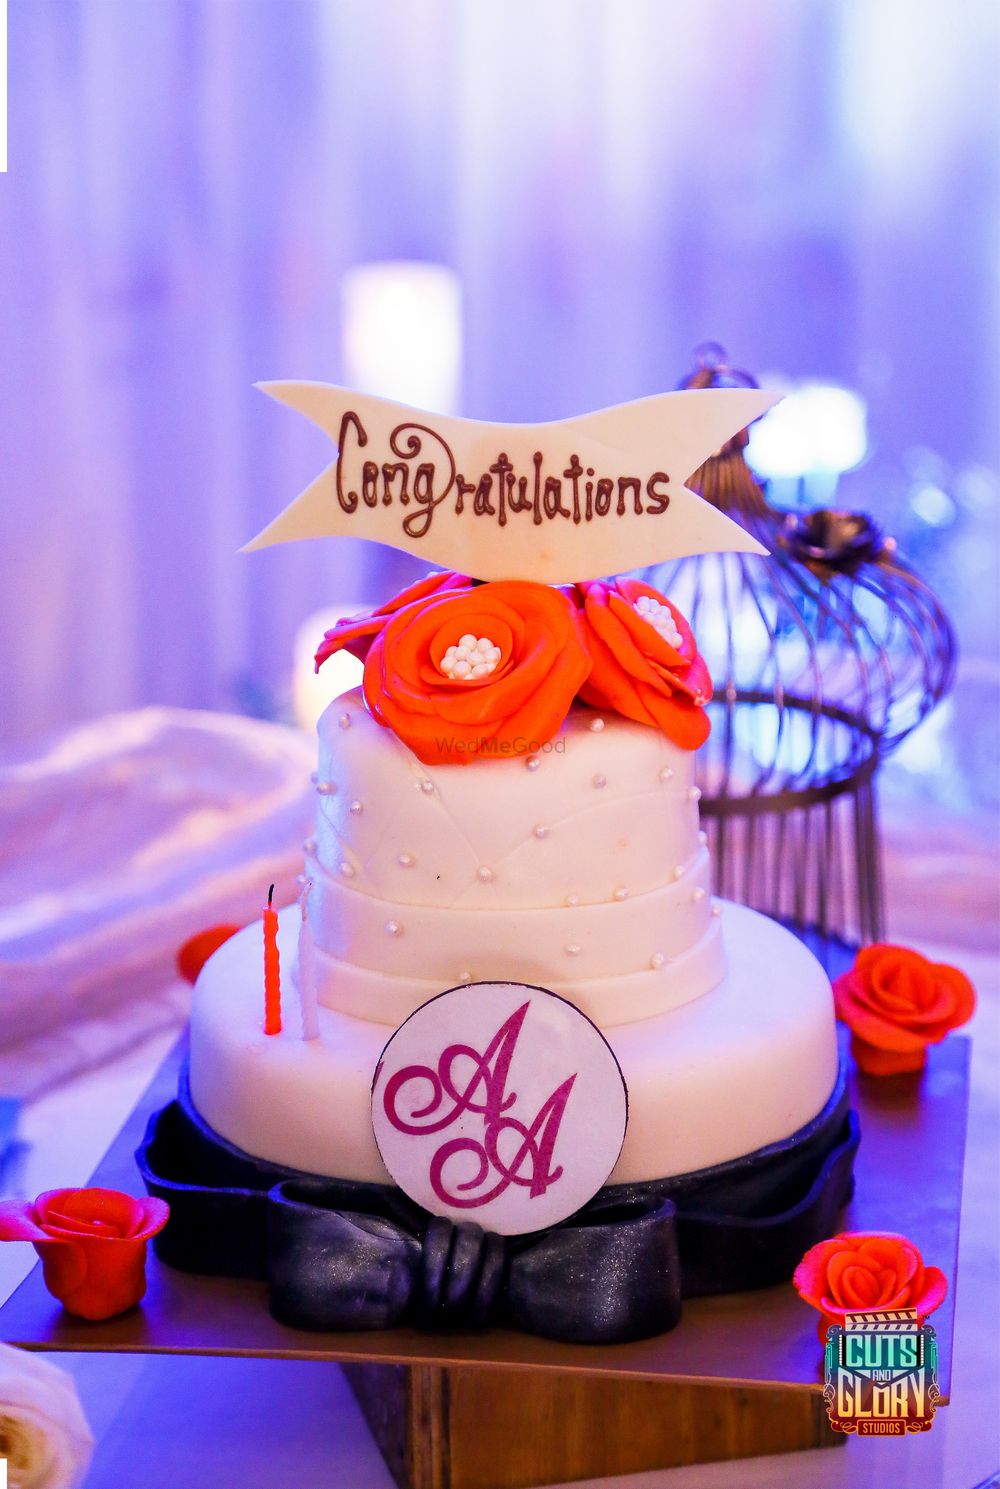 Photo of Wedding cake with orange roses and monogram logo